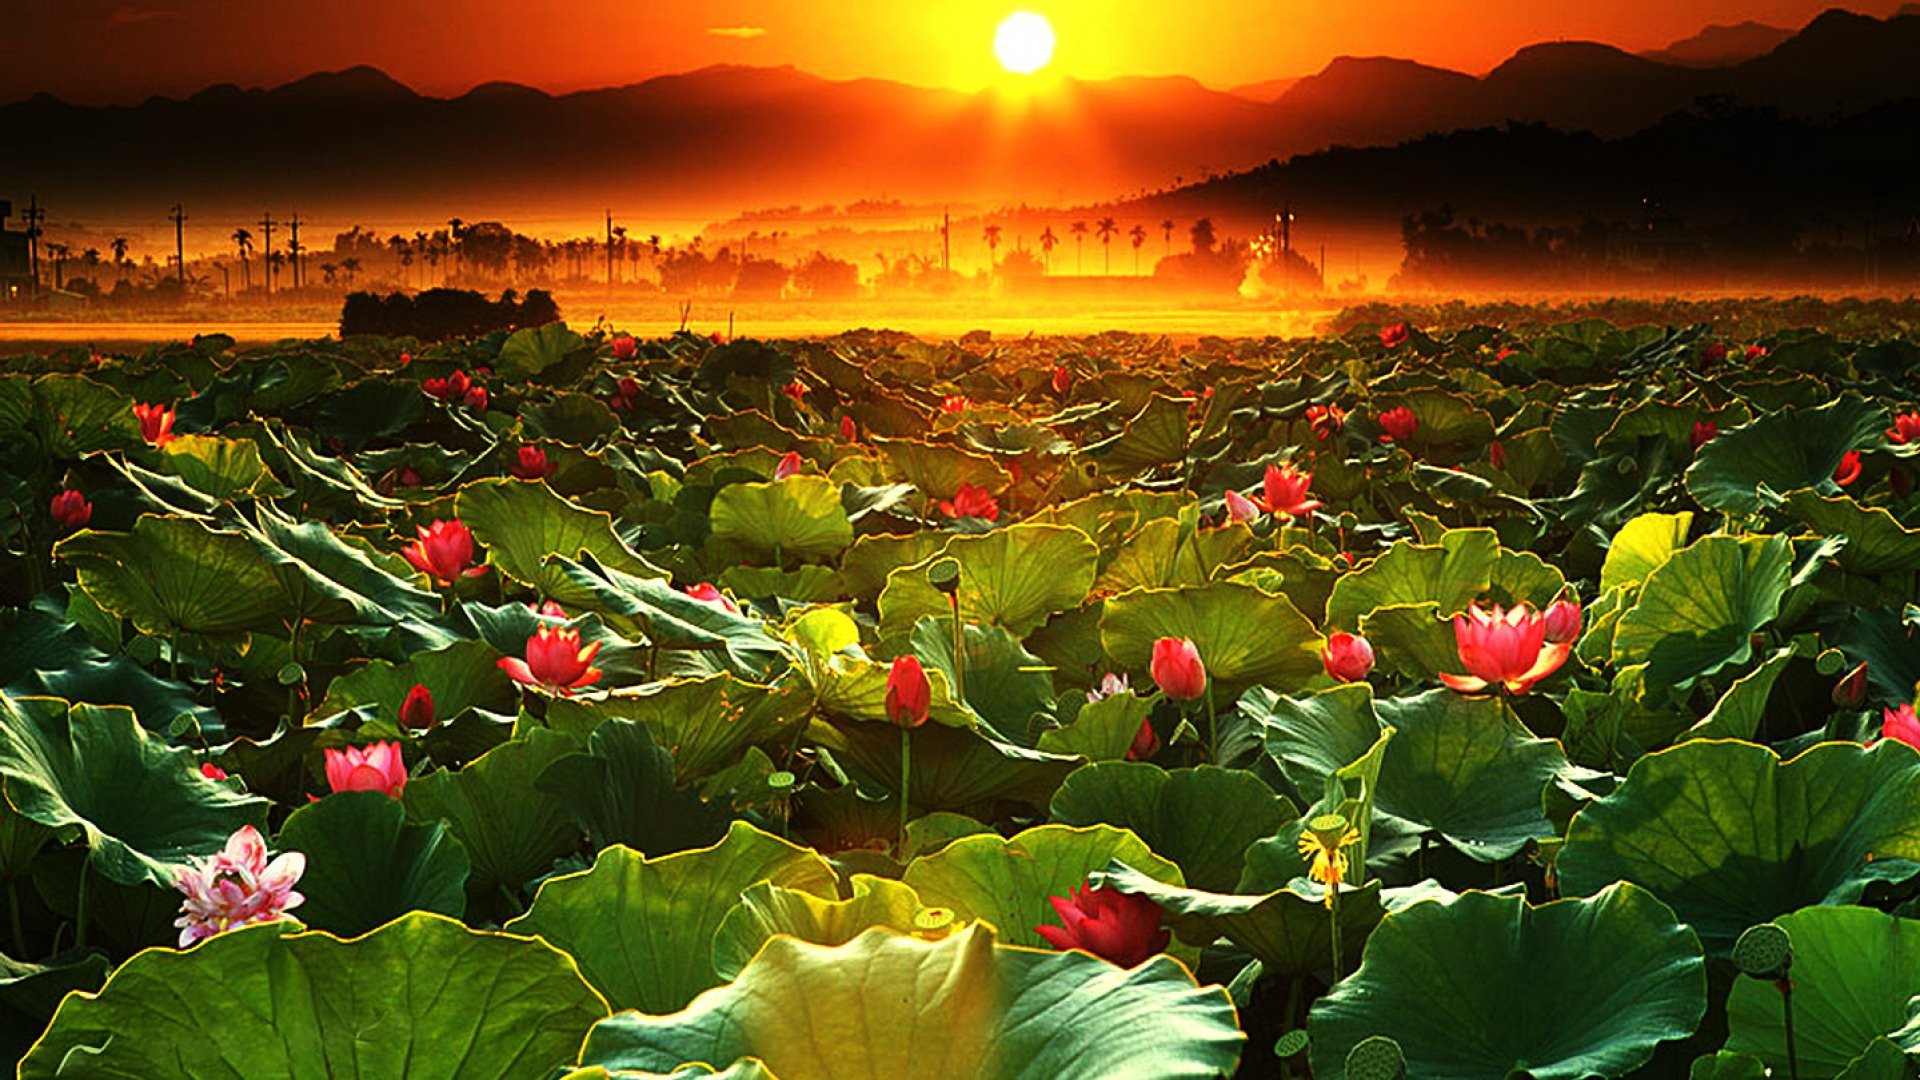 Hoa sen (Lotus): Hoa sen được coi là hoa quốc kỳ của Việt Nam. Đây là loài hoa thanh thoát và đẹp mắt, mang trong mình một giá trị tâm linh sâu sắc. Hãy chiêm ngưỡng hình ảnh của hoa sen để cảm nhận sự thanh tịnh và tinh khiết của nó.